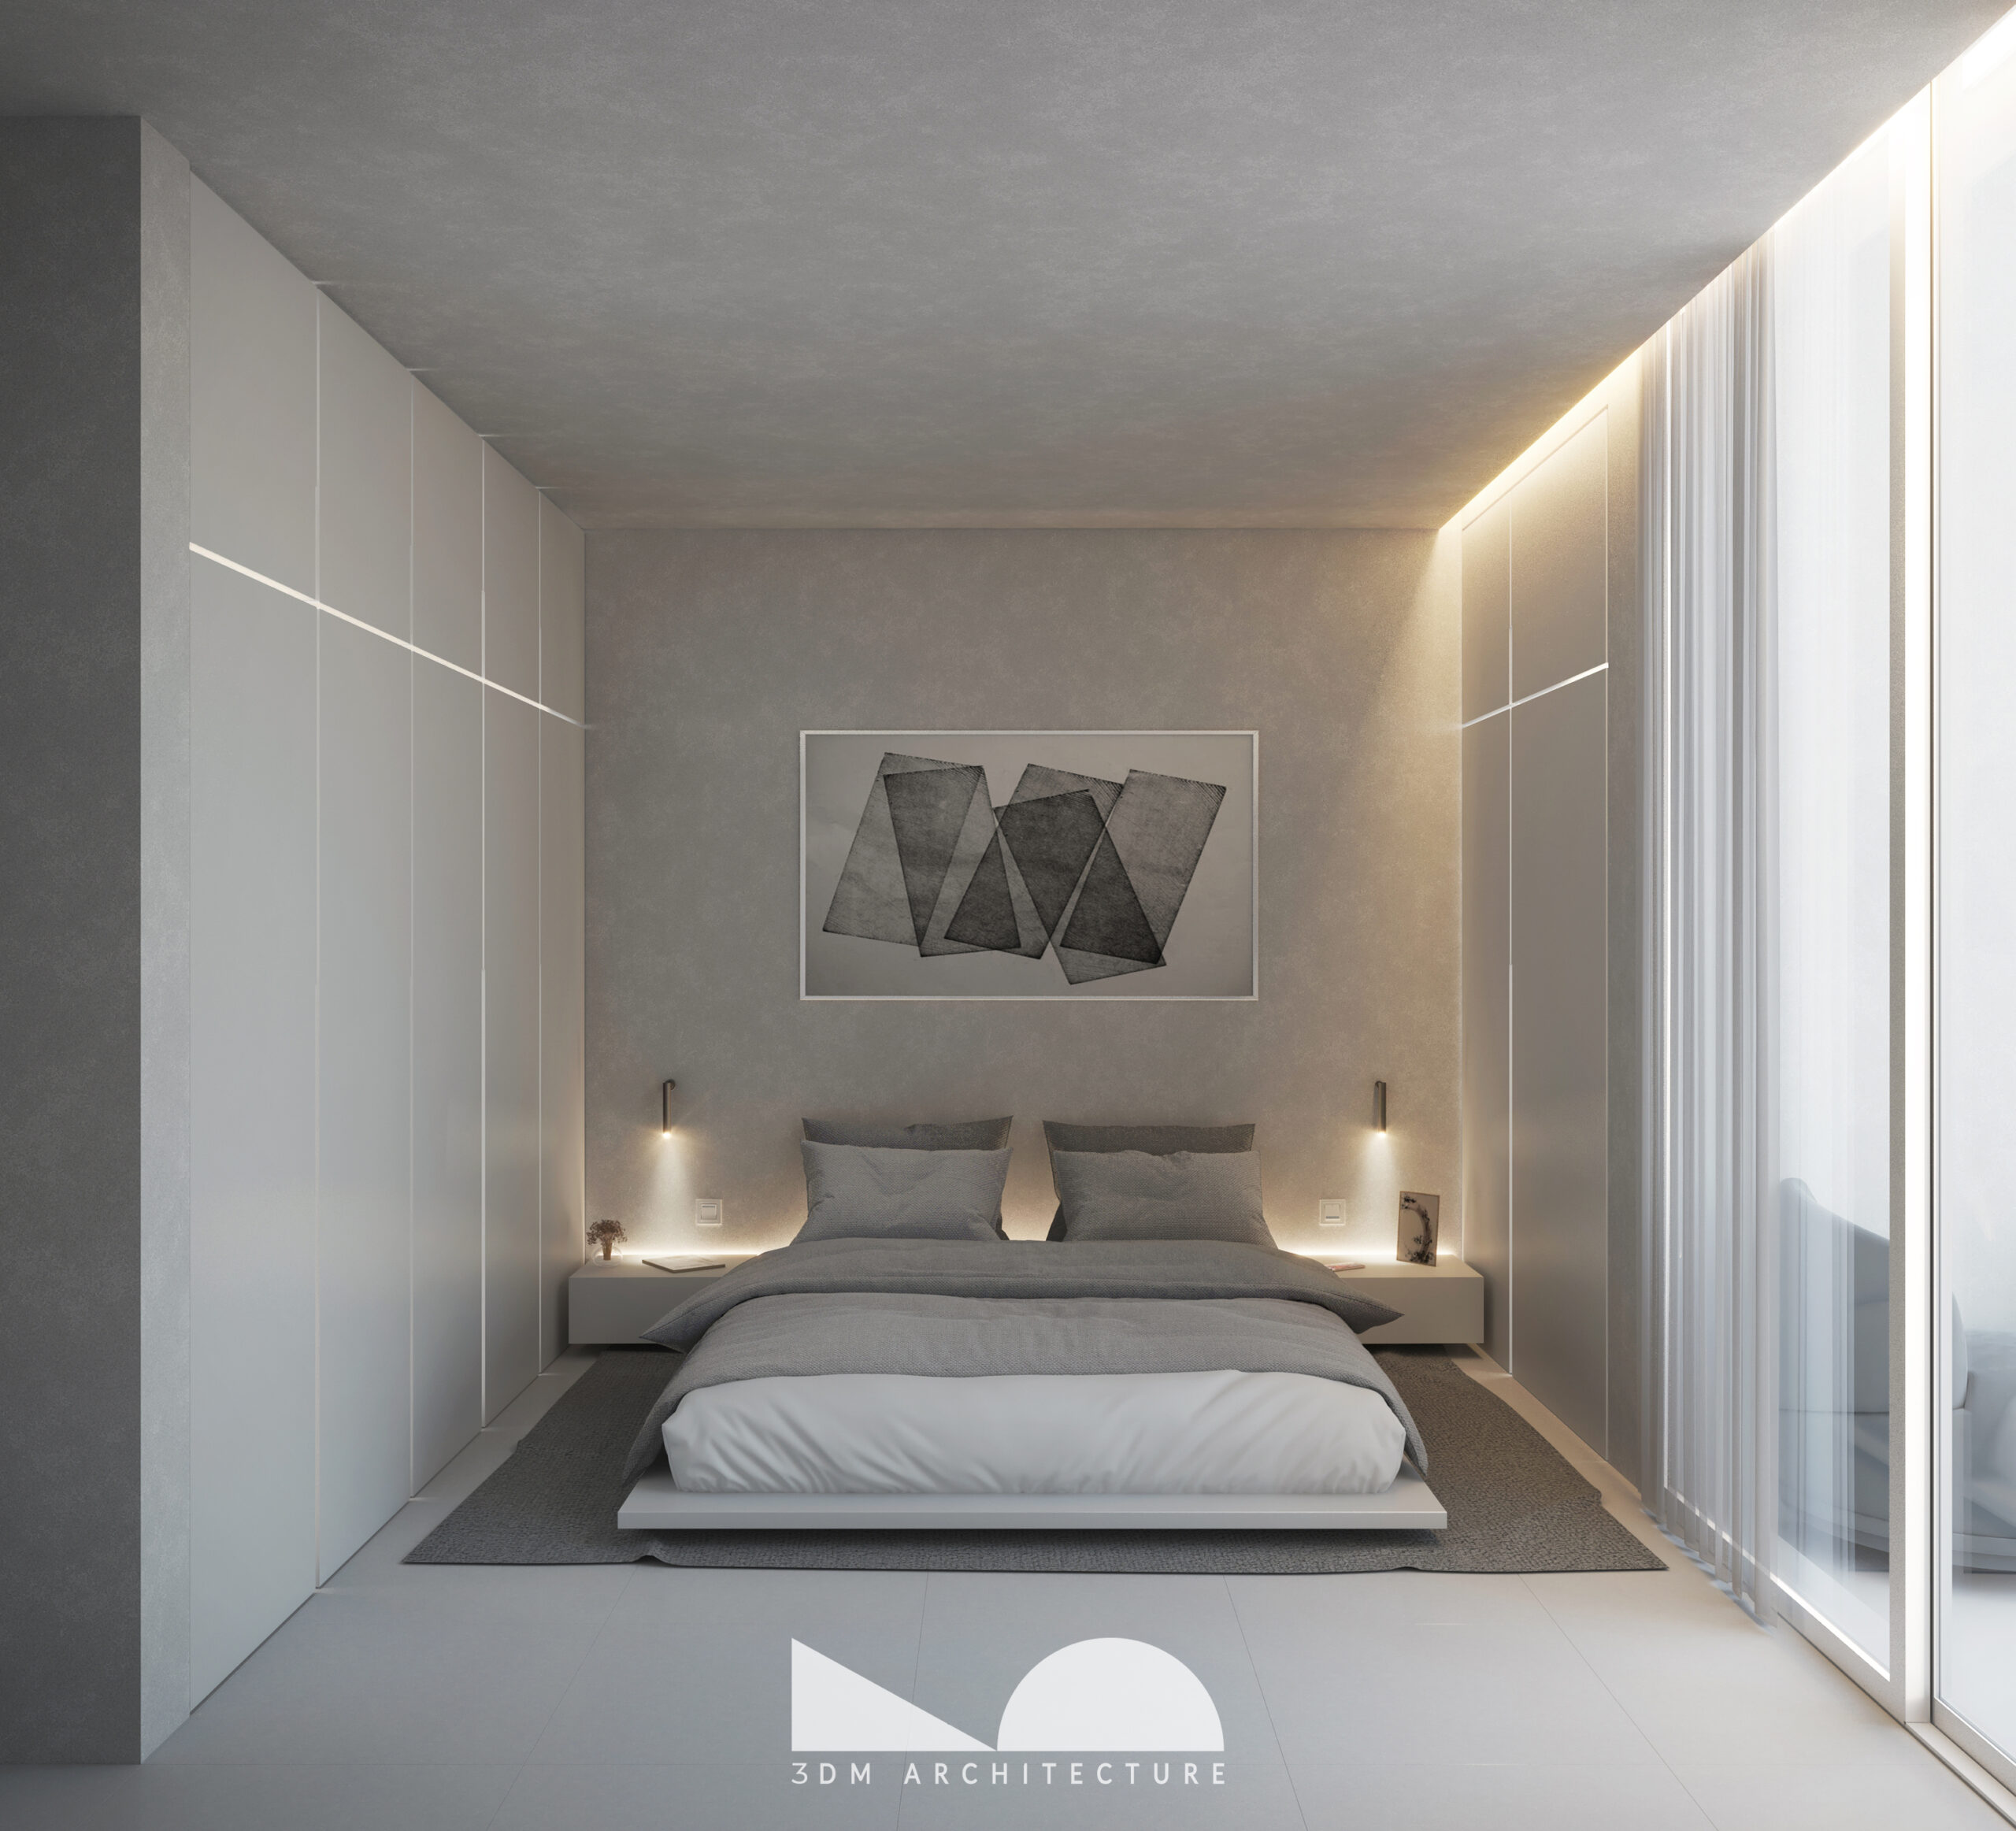 3DM_ATTARD_ATD01_UNIT 09_Master bedroom with logo